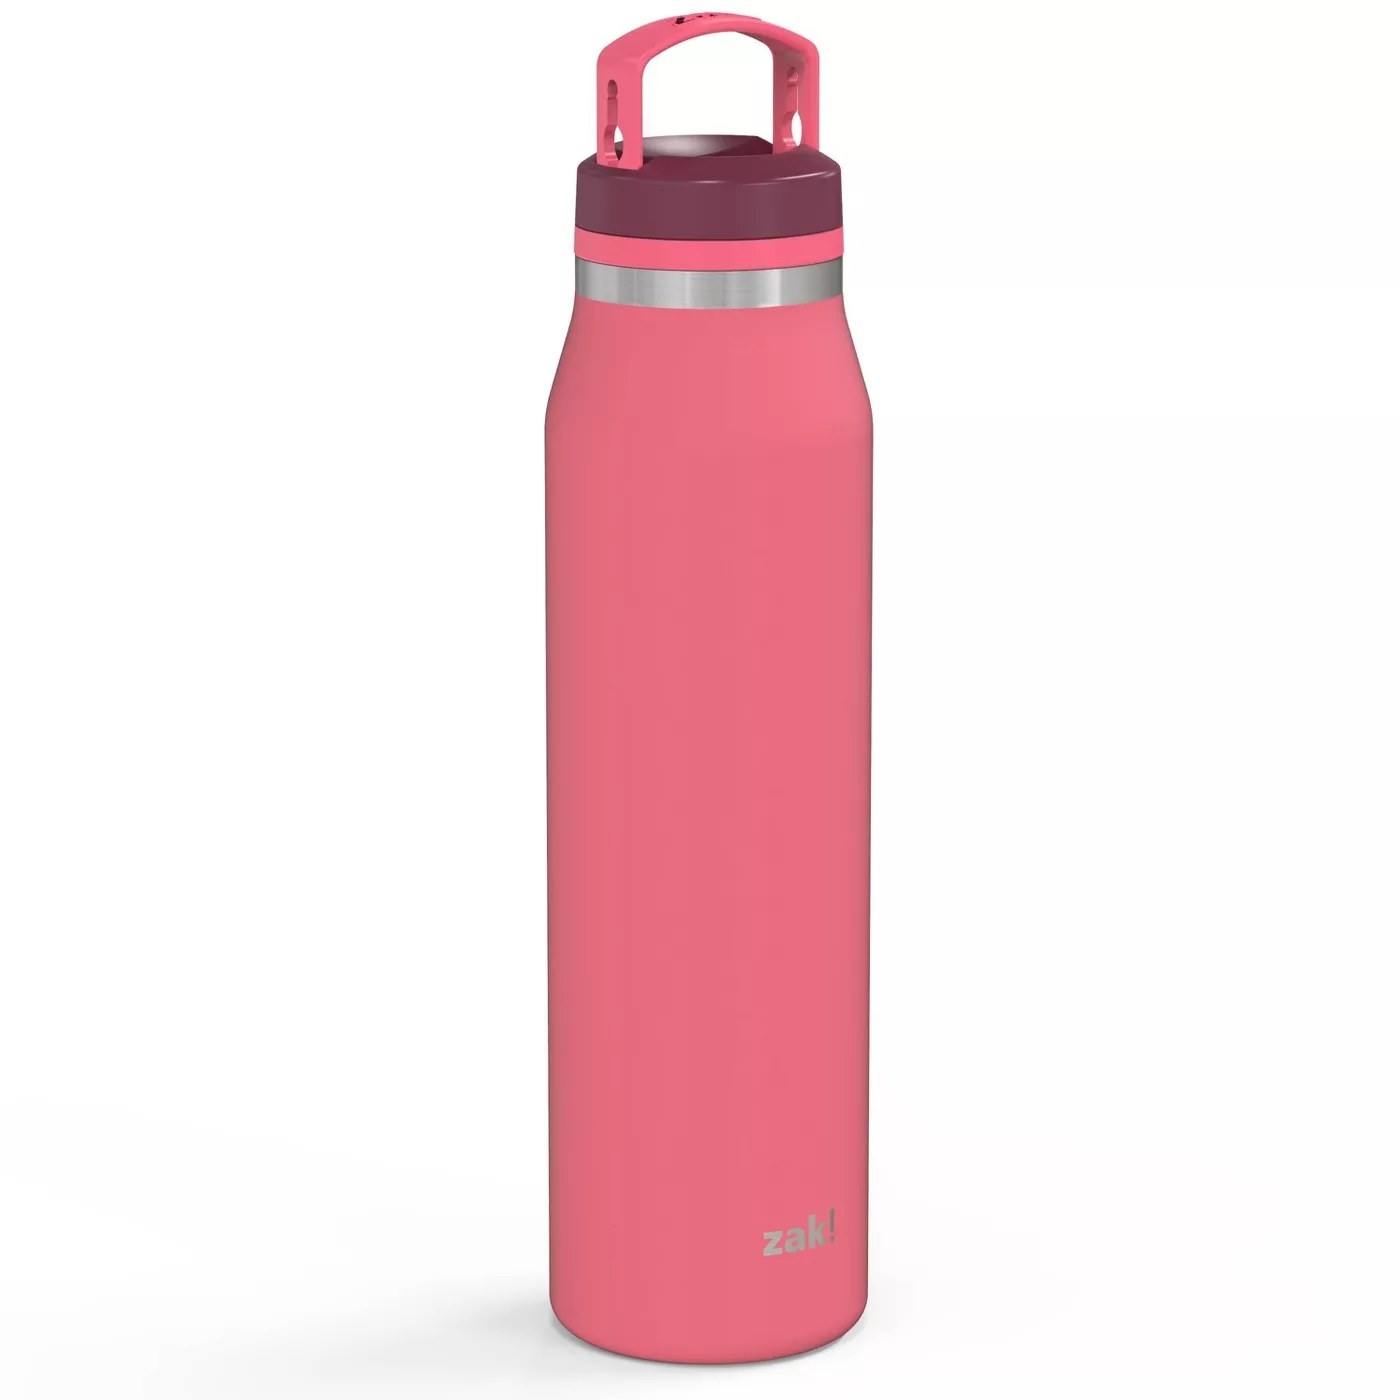 The pink, 24-oz, leak-proof water bottle